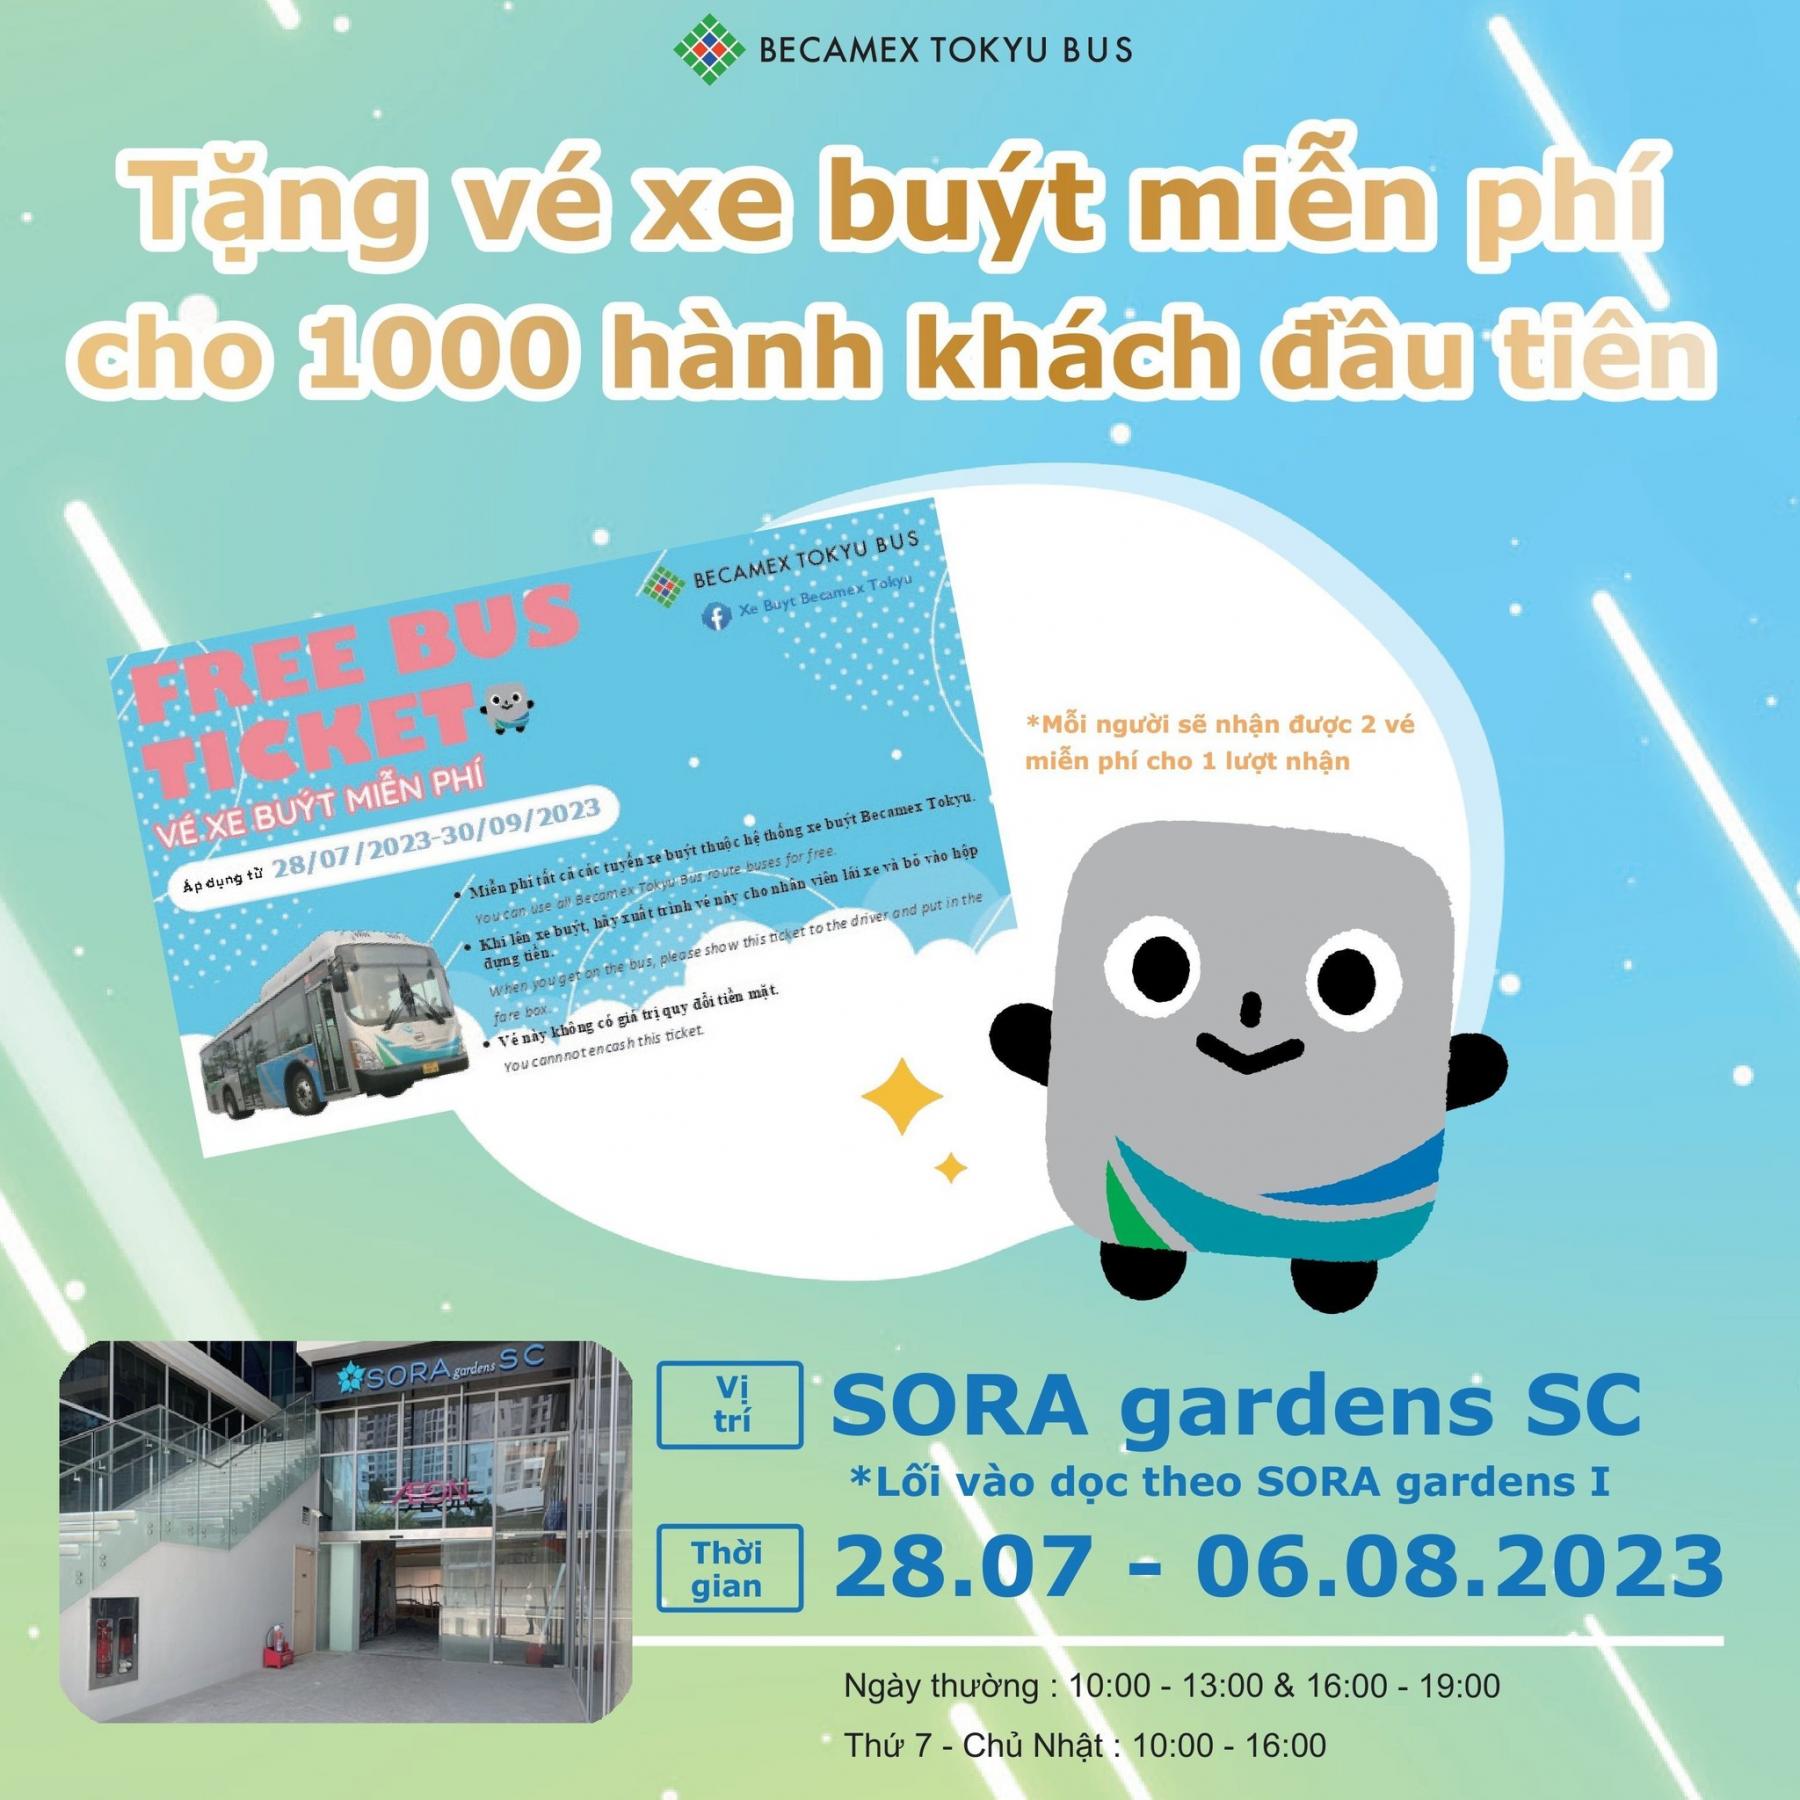 Công ty Becamex Tokyu triển khai chương trình khuyến mãi đặc biệt “ Nào, cùng đi xe buýt đến SORA Gardens”